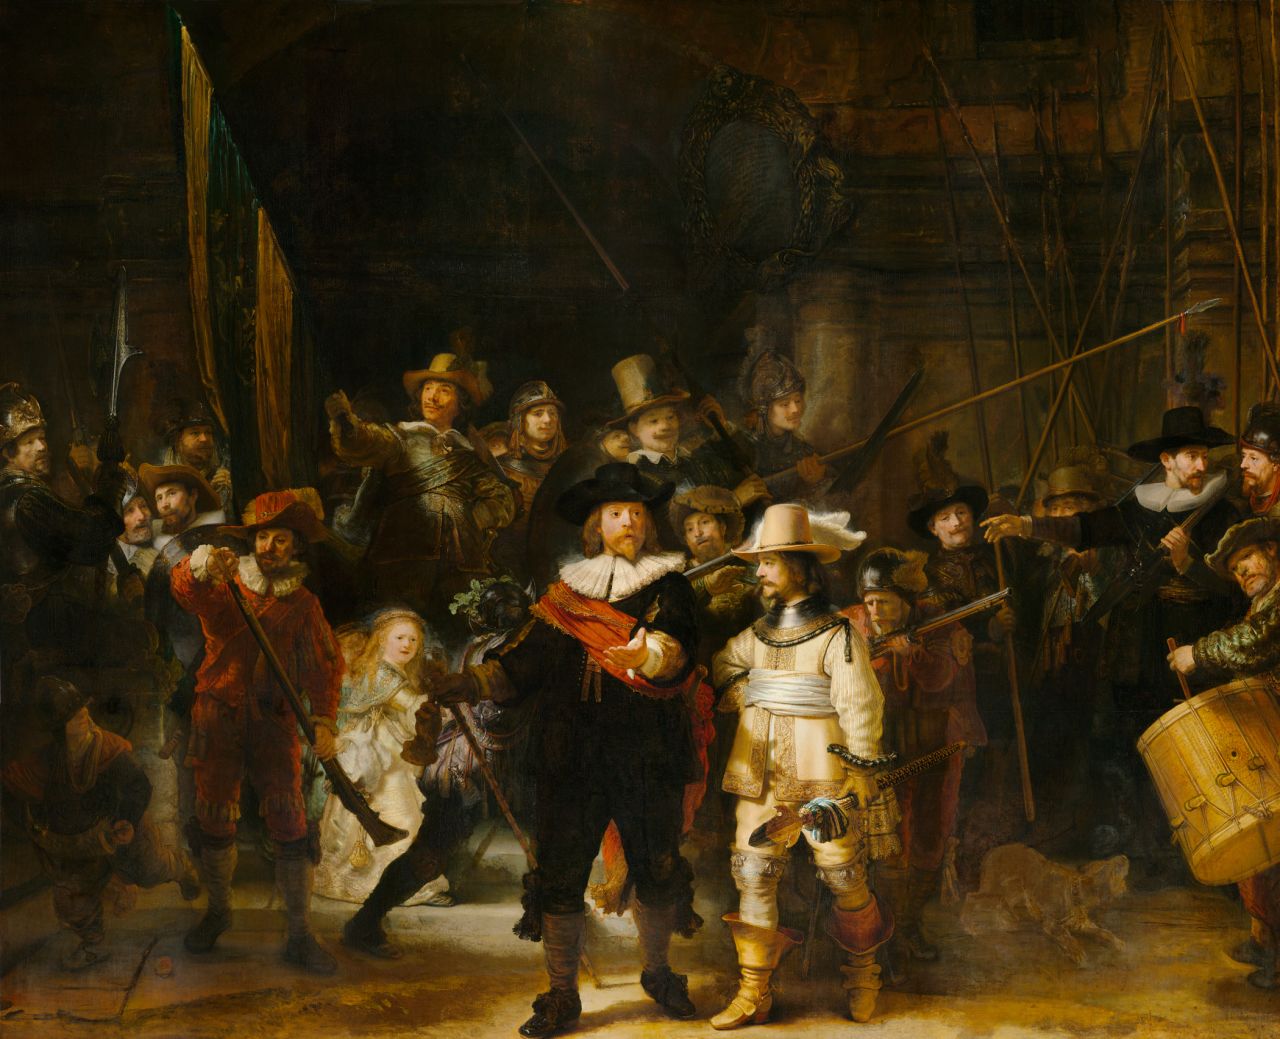 Rembrandt van Rijn's "The Night Watch" (1642) from the Rijksmuseum, Amsterdam.